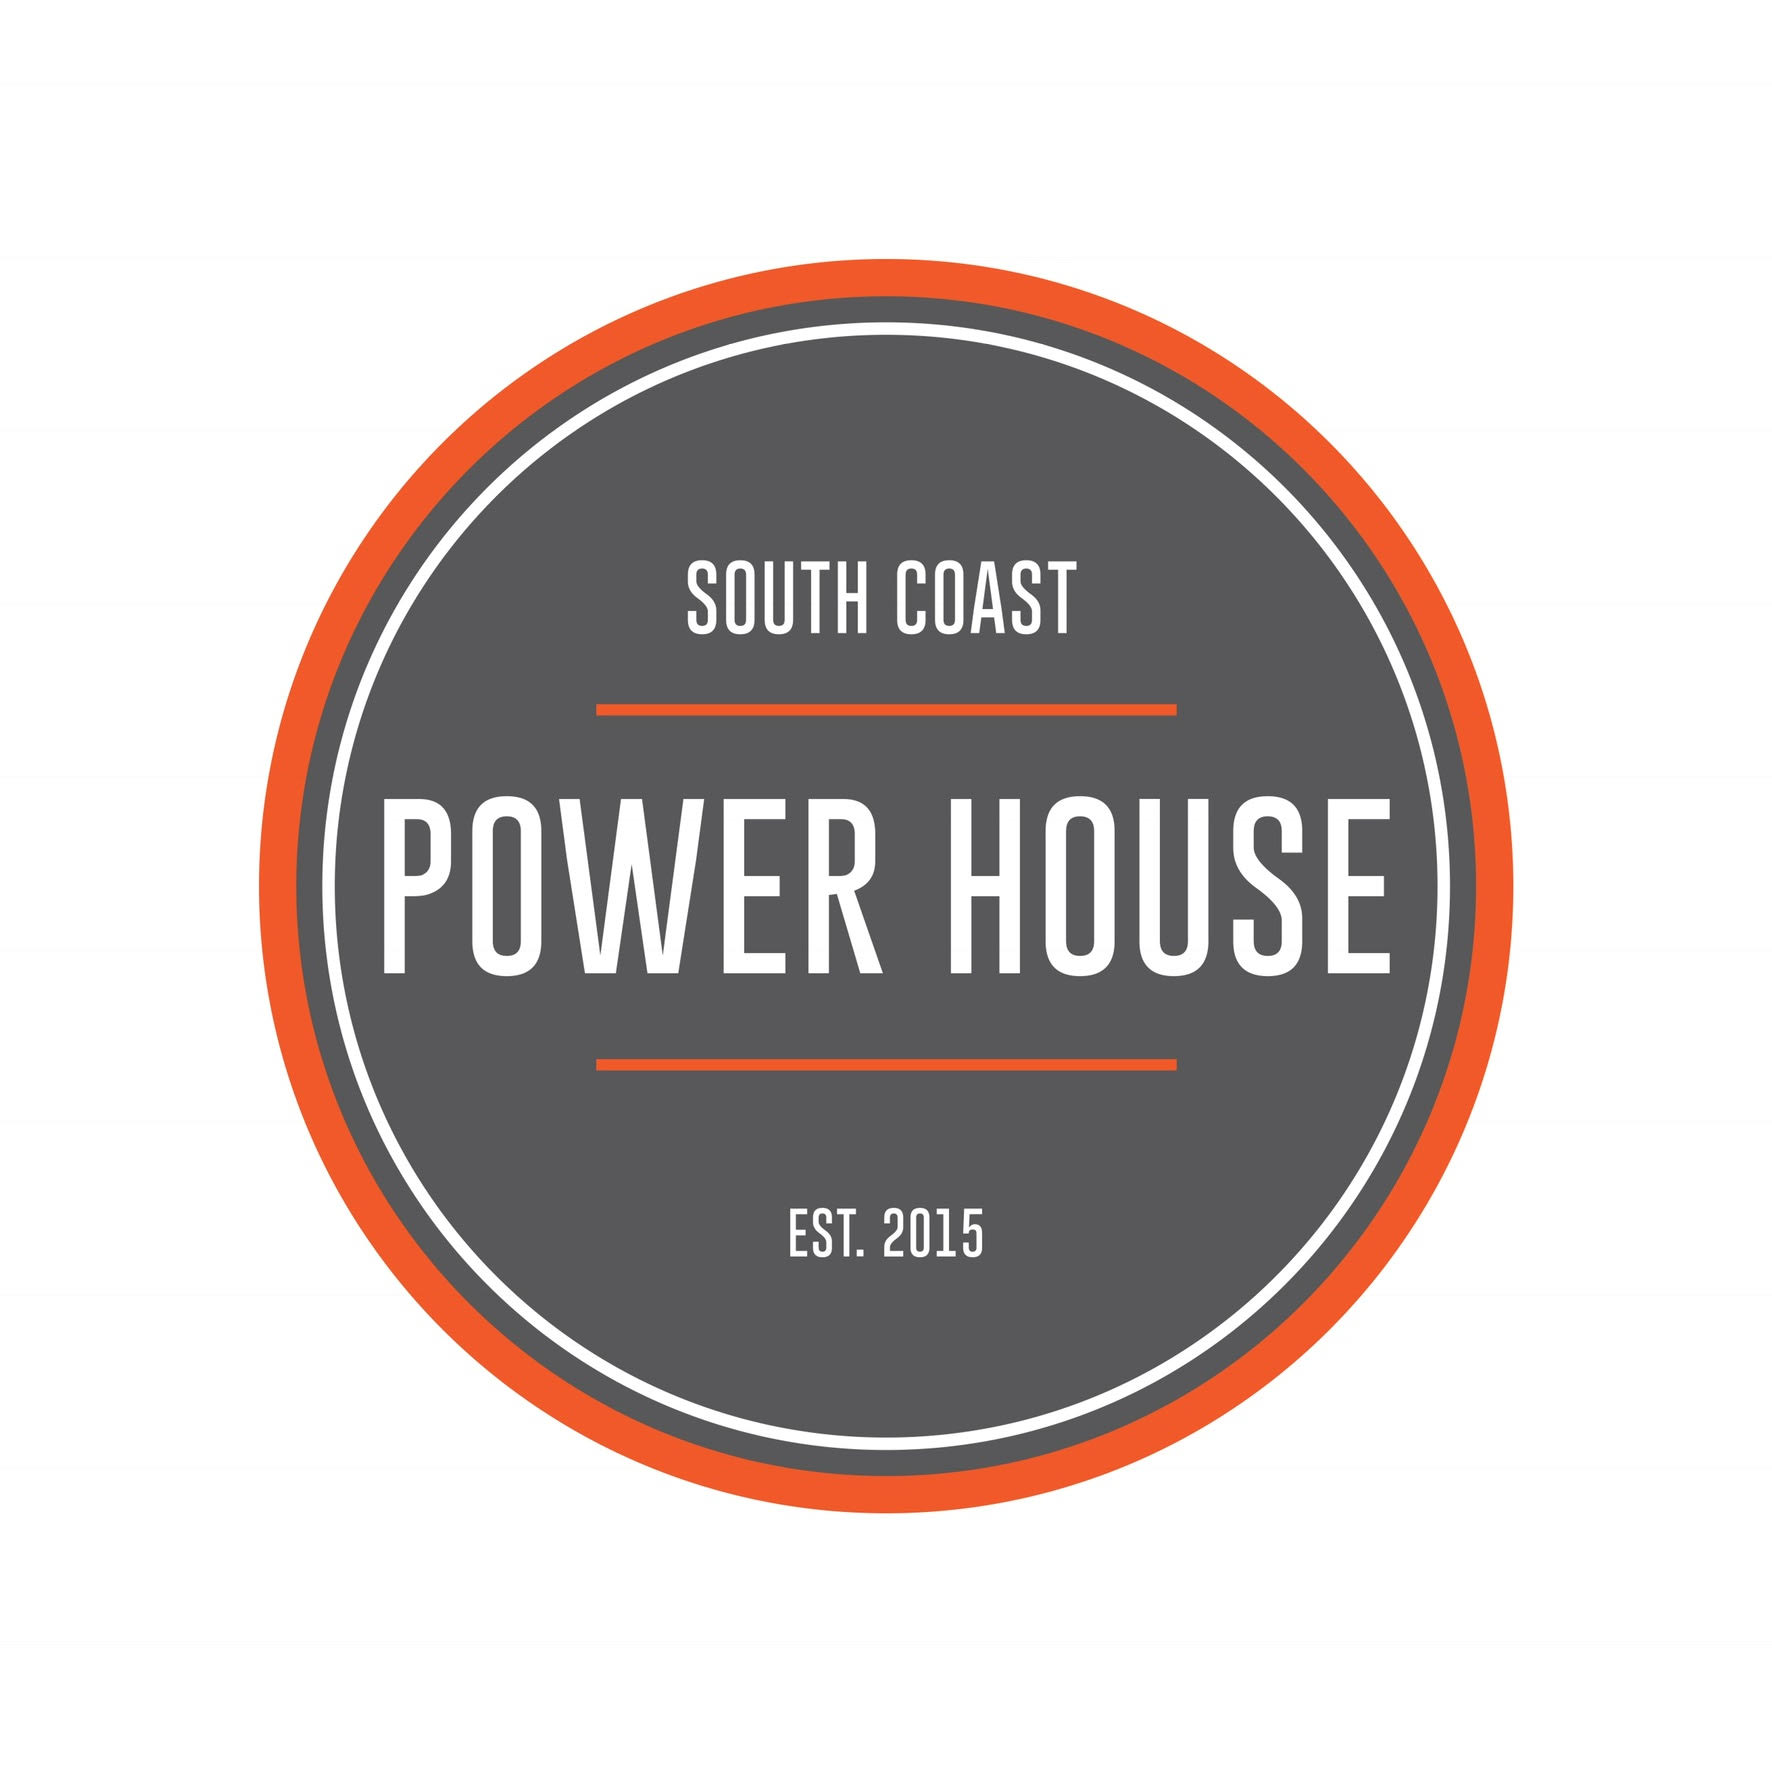 South Coast Power House